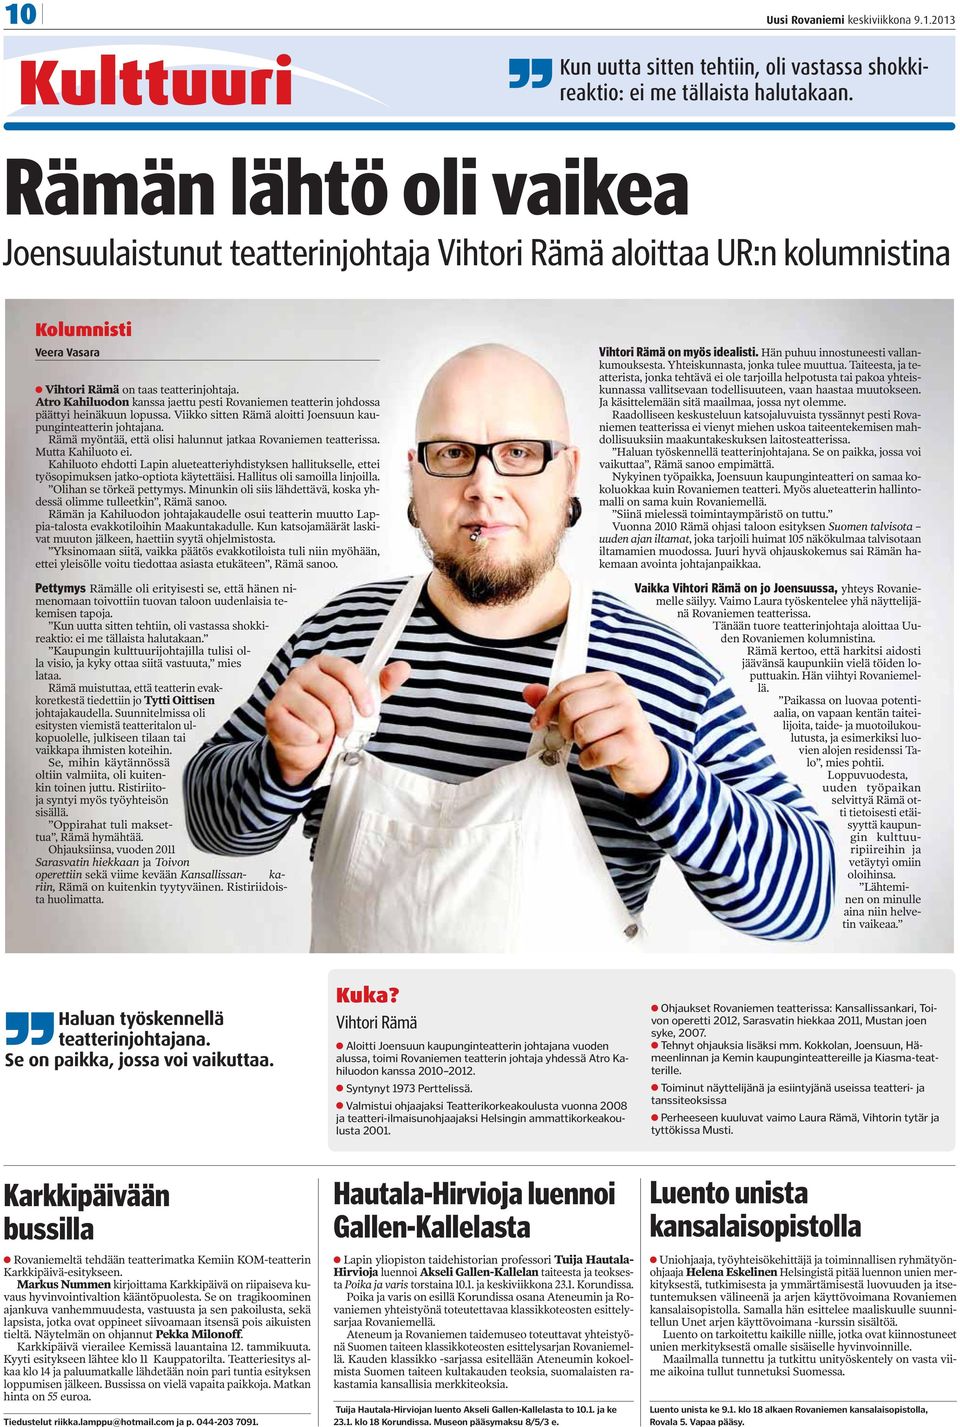 Atro Kahiluodon kanssa jaettu pesti Rovaniemen teatterin johdossa päättyi heinäkuun lopussa. Viikko sitten Rämä aloitti Joensuun kaupunginteatterin johtajana.